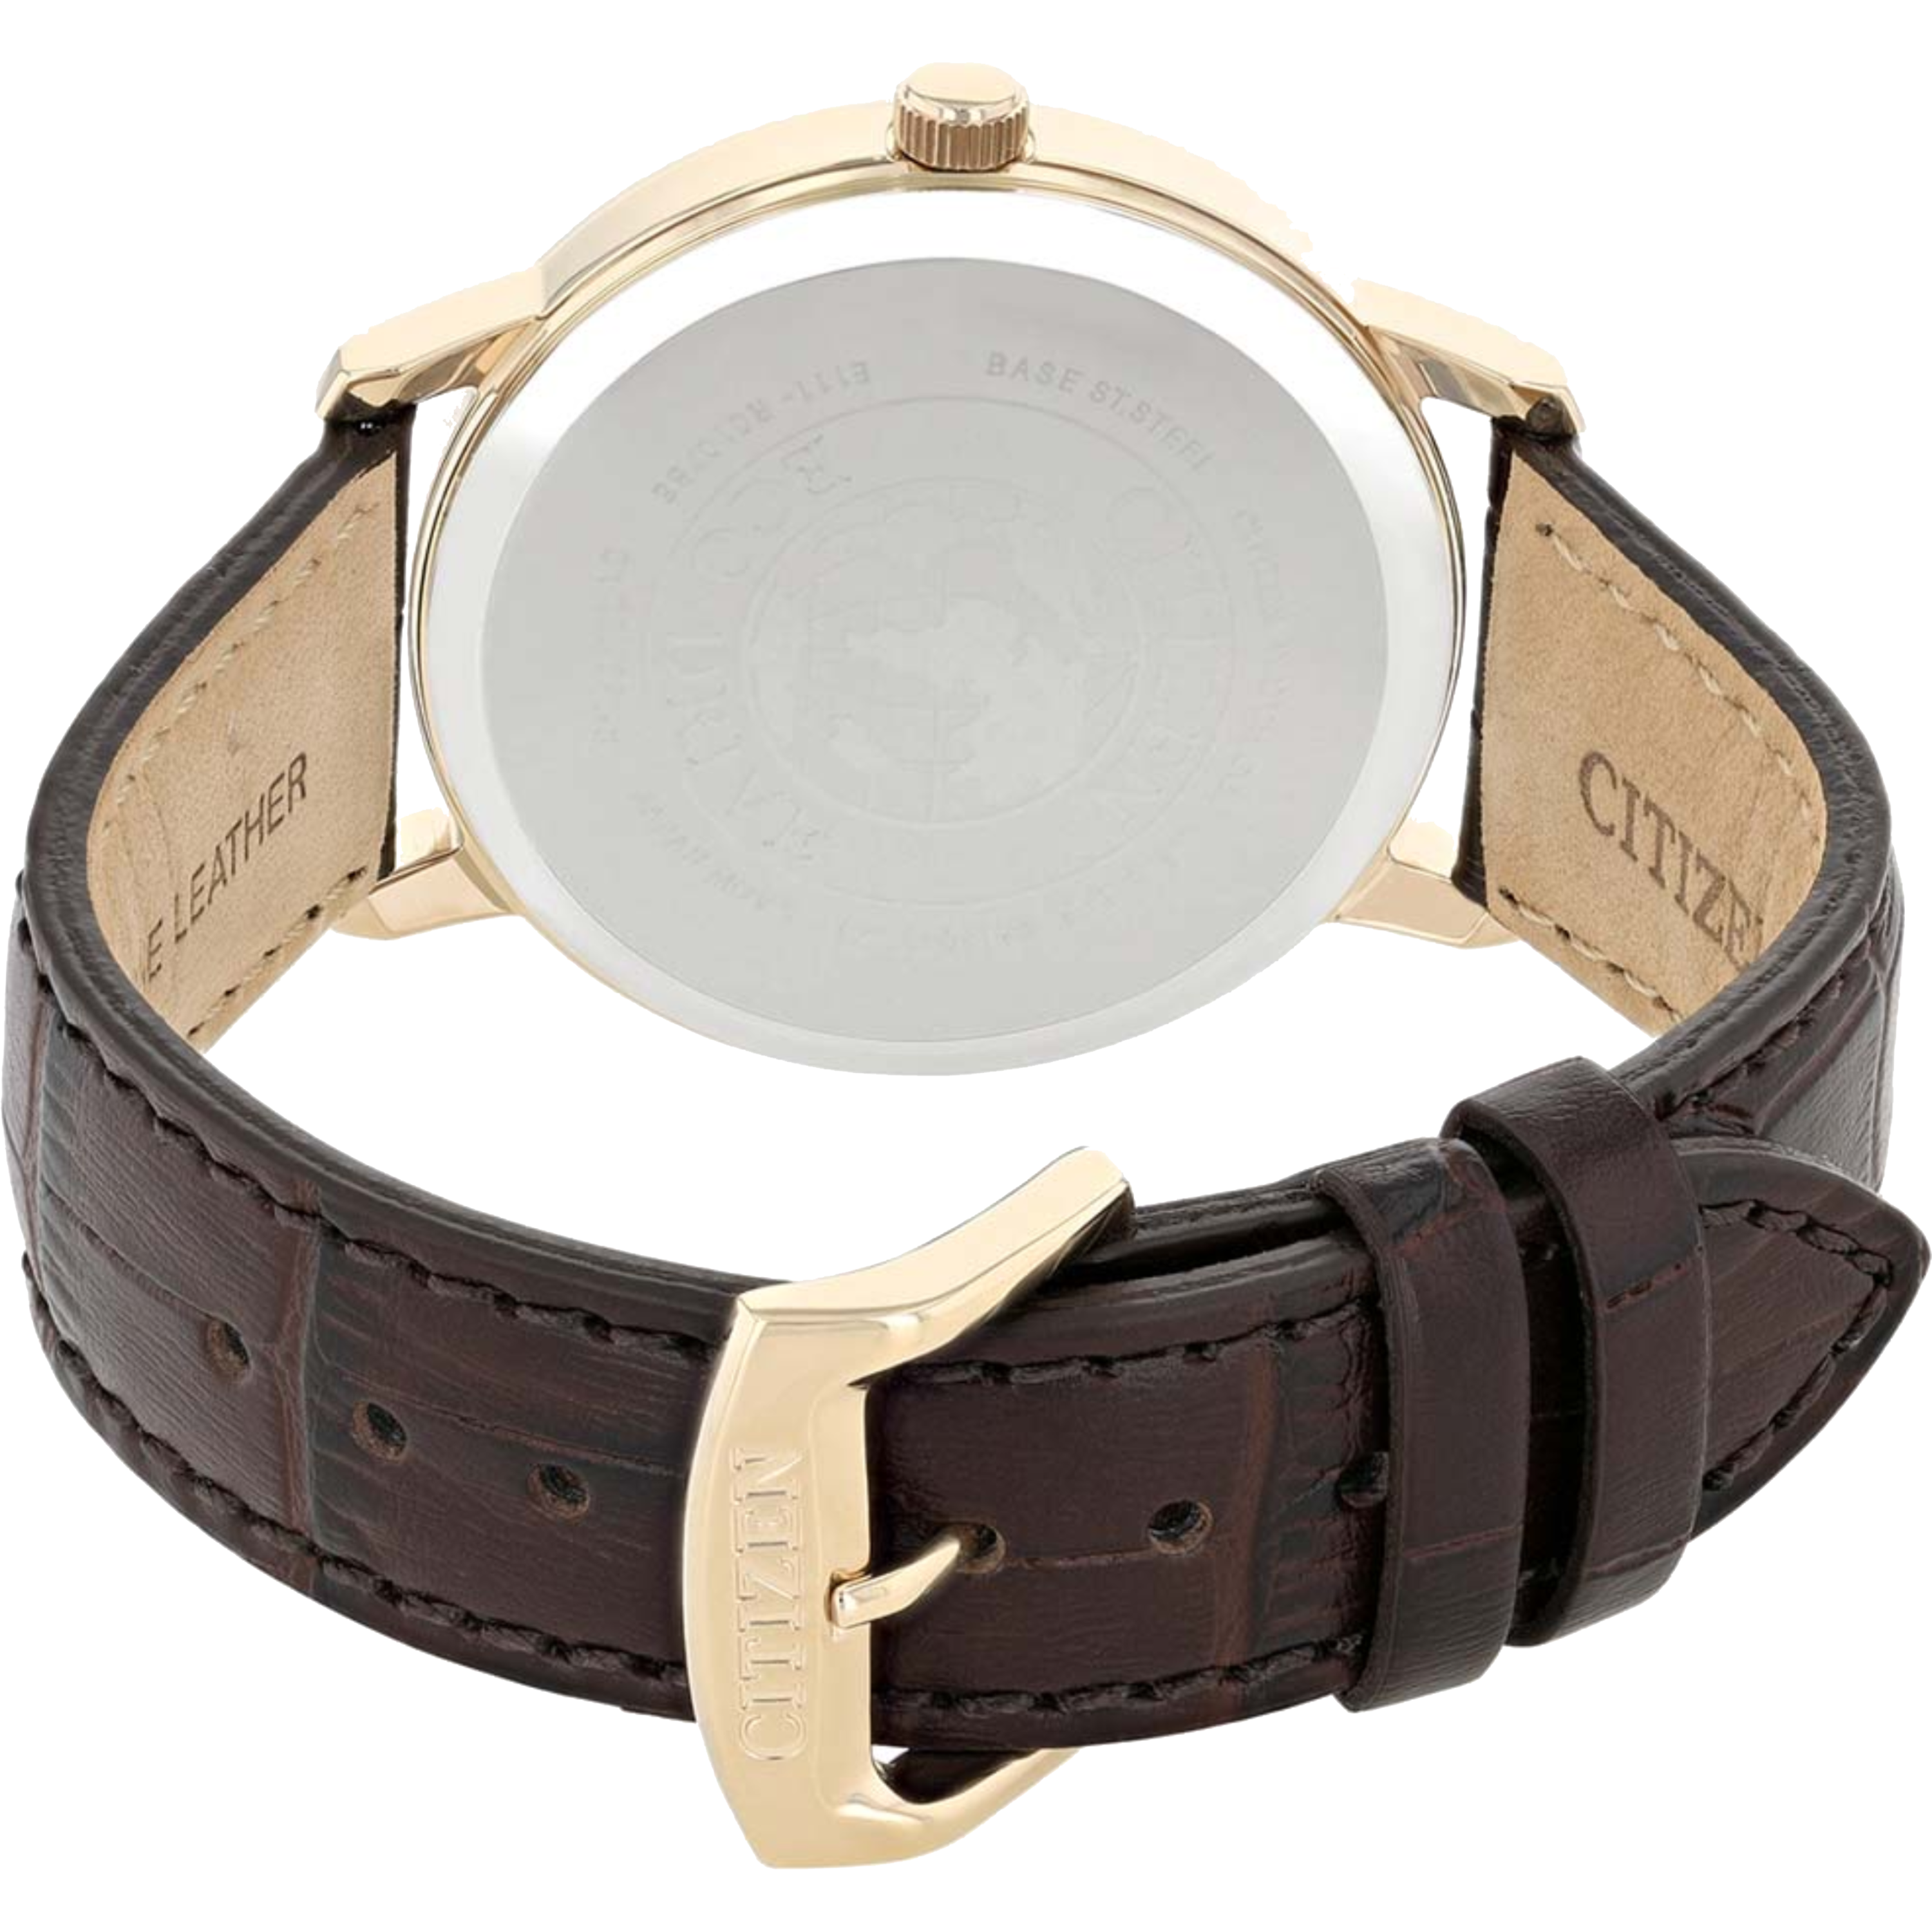 שעון יד לגבר מנגנון אקו דרייב Citizen BM7463-12A 40mm - צבע רוז גולד/עור חום אחריות לשנתיים